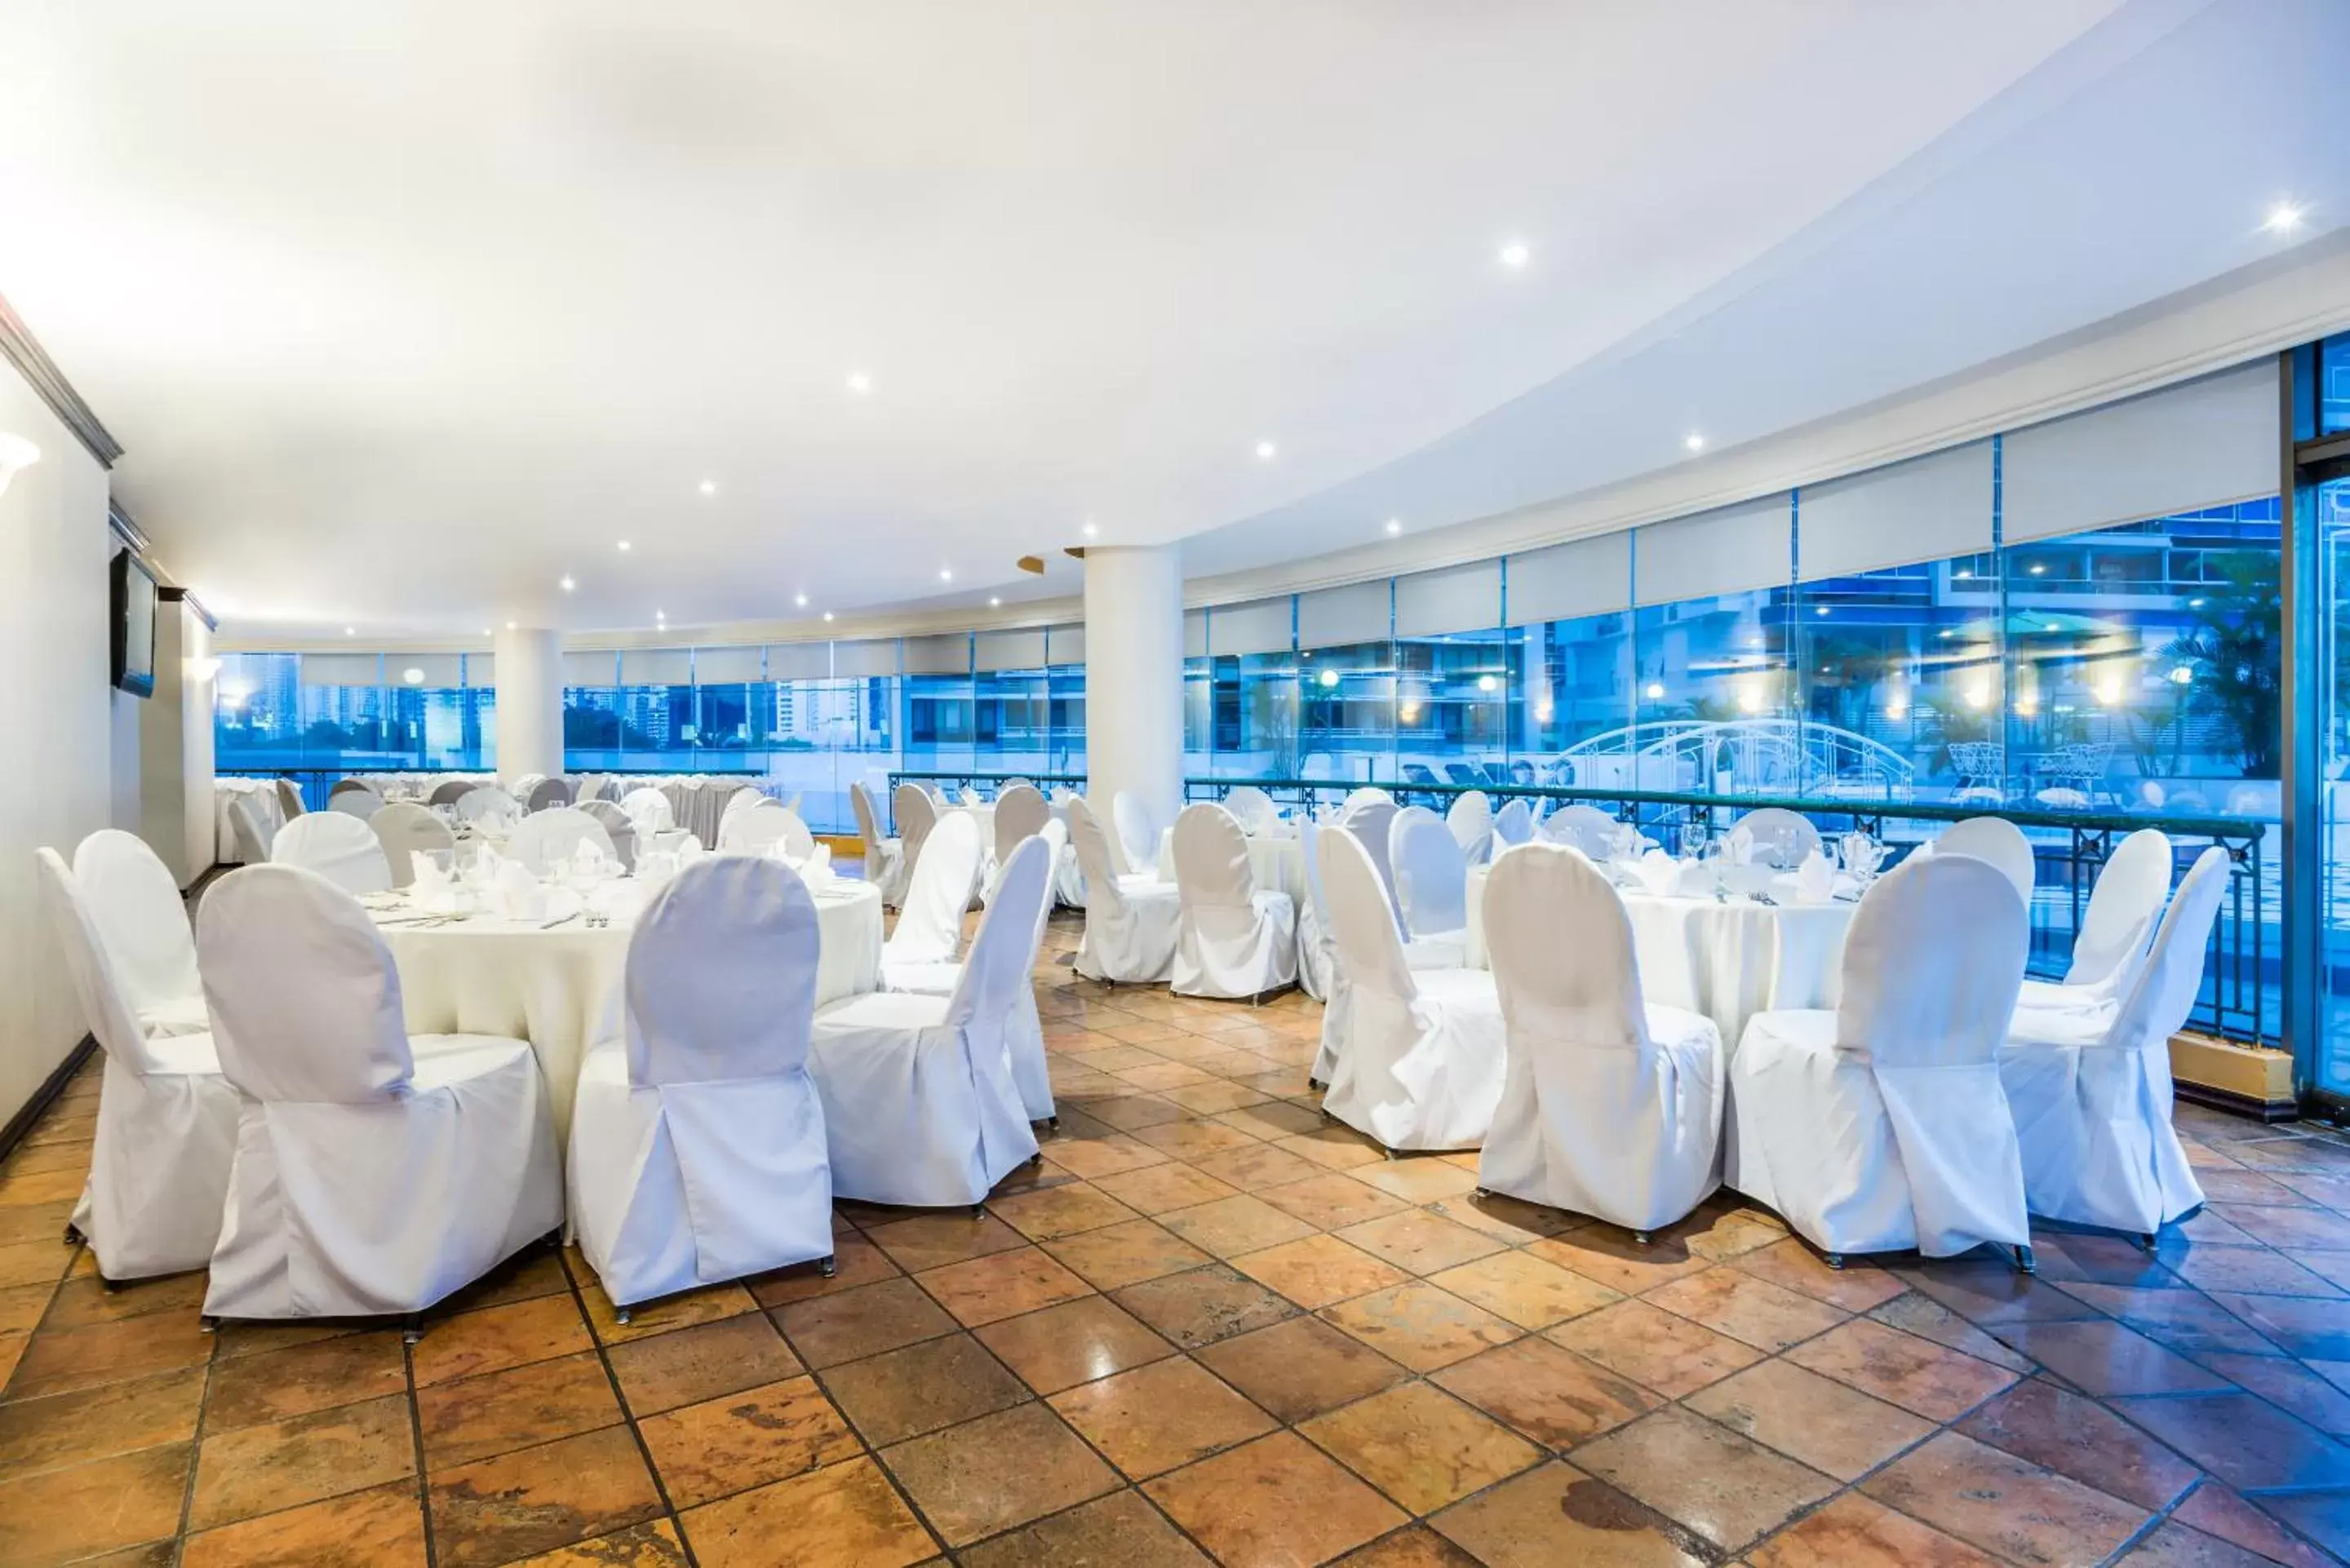 Banquet/Function facilities, Banquet Facilities in Hospedium Princess Hotel Panamá